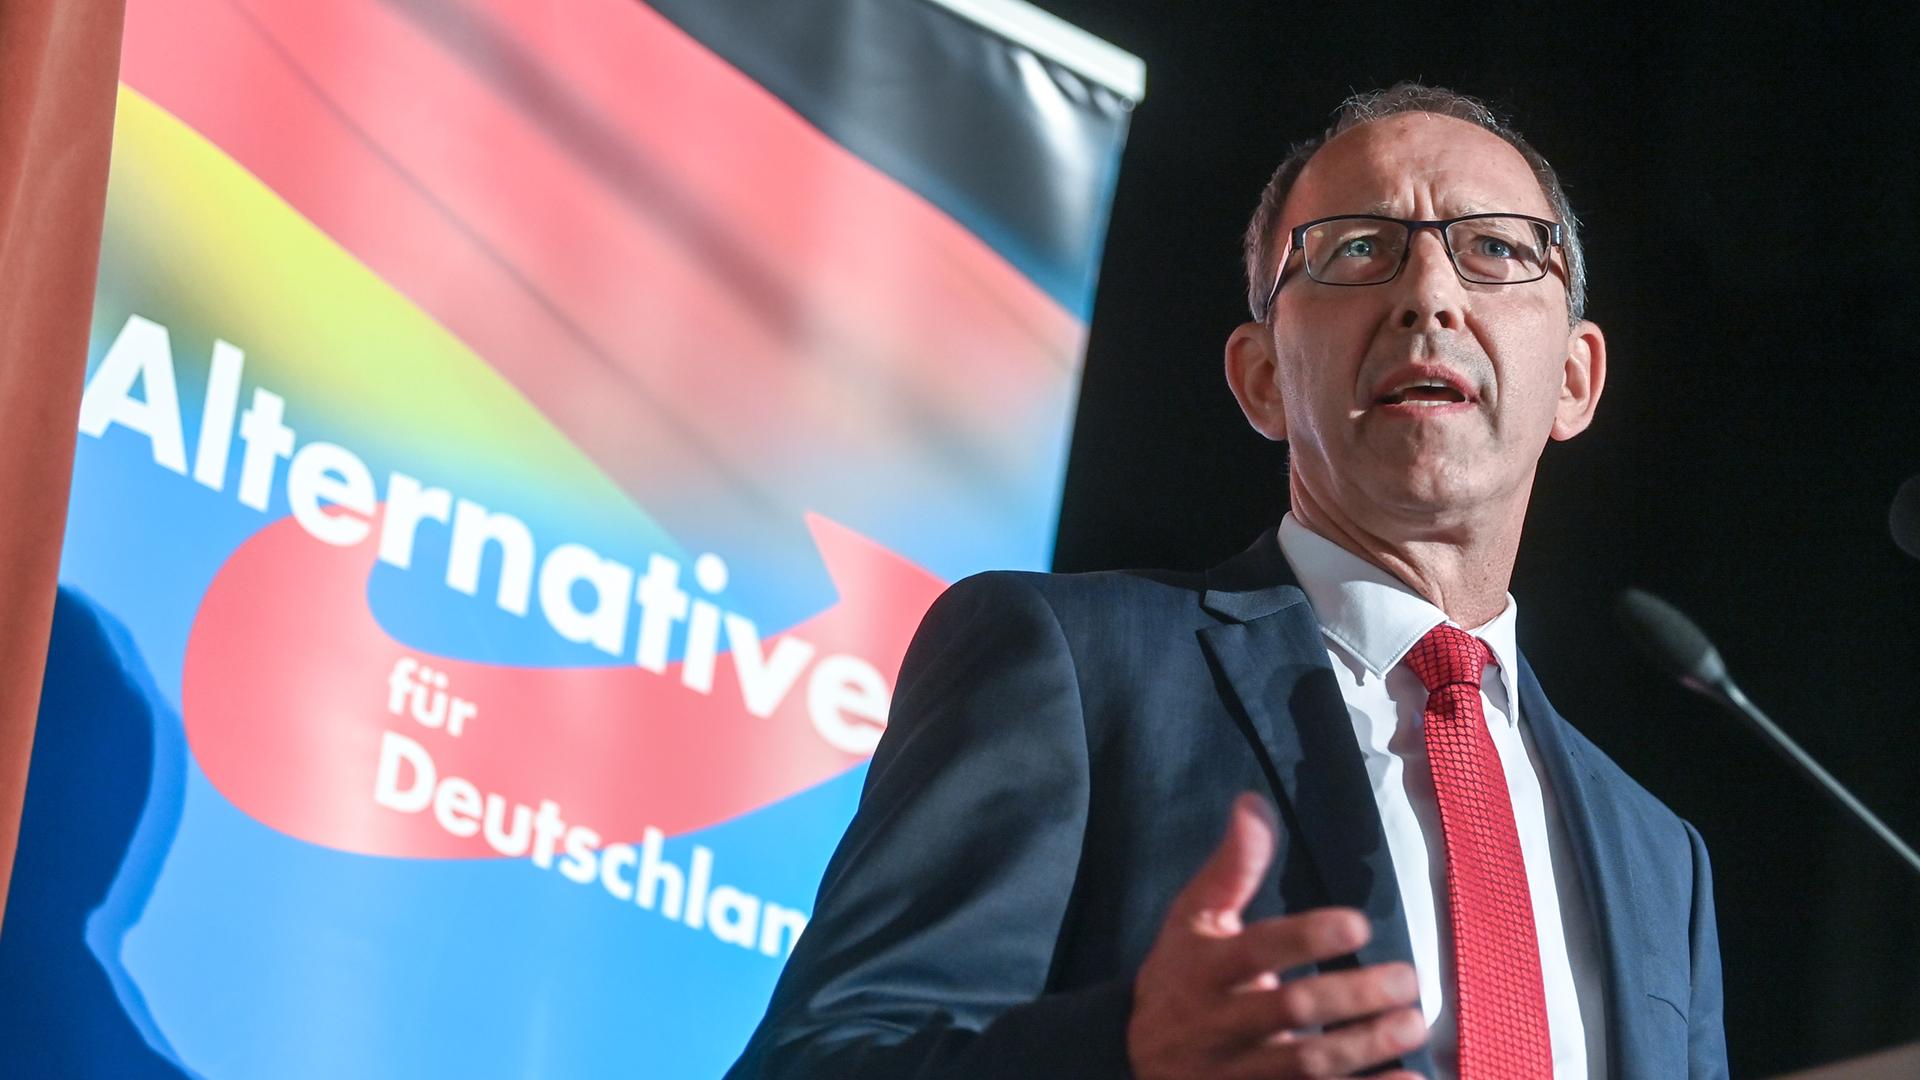 Jörg Urban, Fraktionsvorsitzender der AfD in Sachsen, spricht auf dem Wahlkampfauftakt der AfD Sachsen in Stollberg 2021. Gegen die Veranstaltung waren Proteste angekündigt.